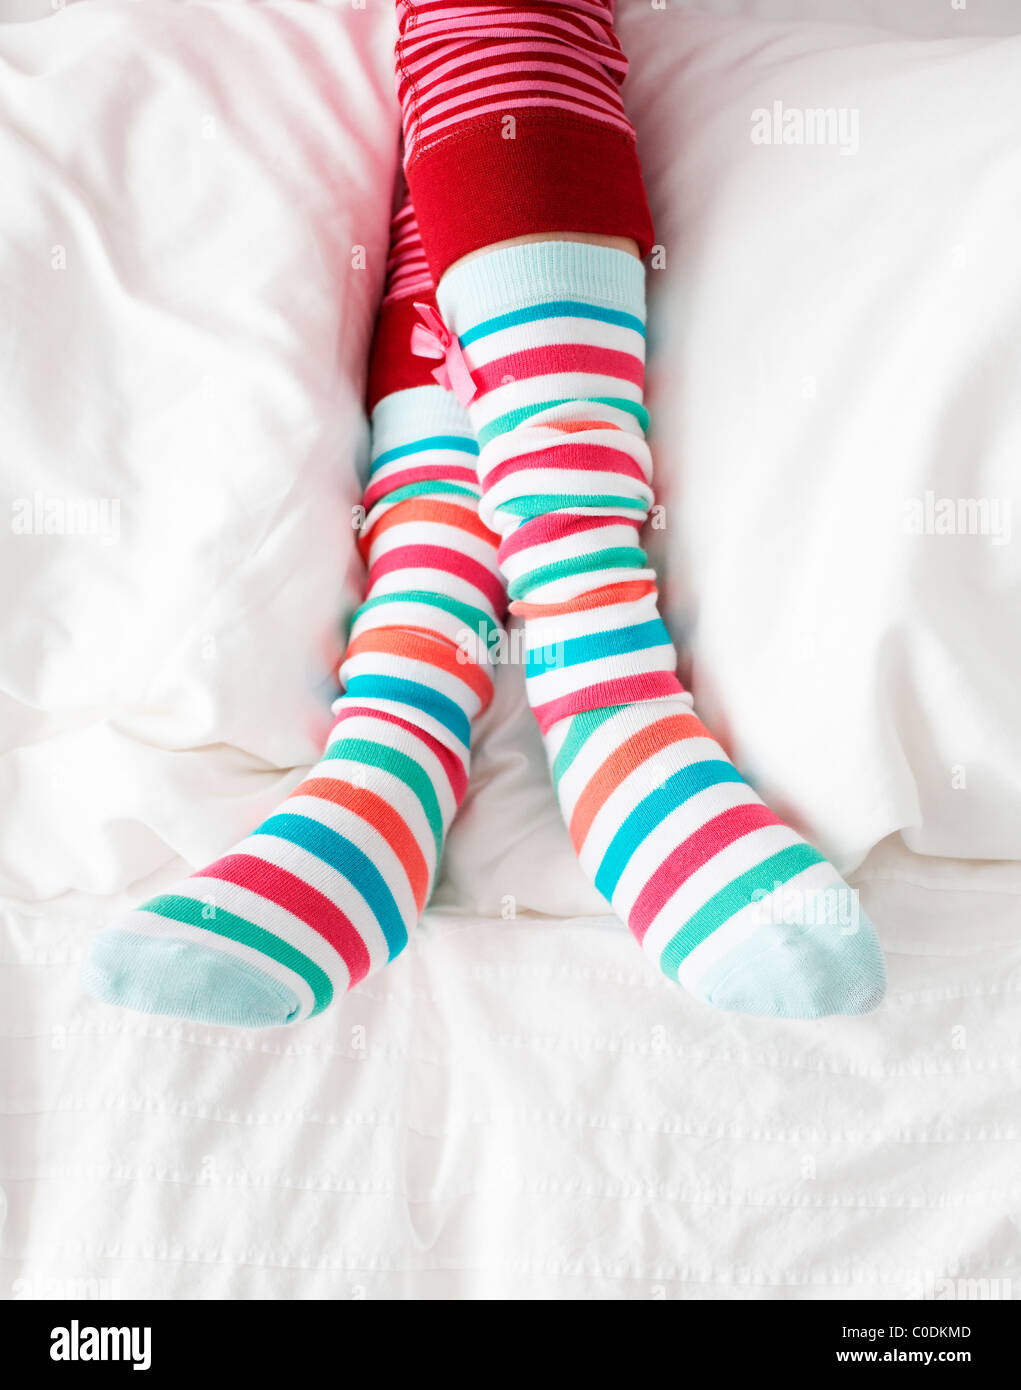 Mädchen tragen bunte gestreifte Socken Stockfotografie - Alamy